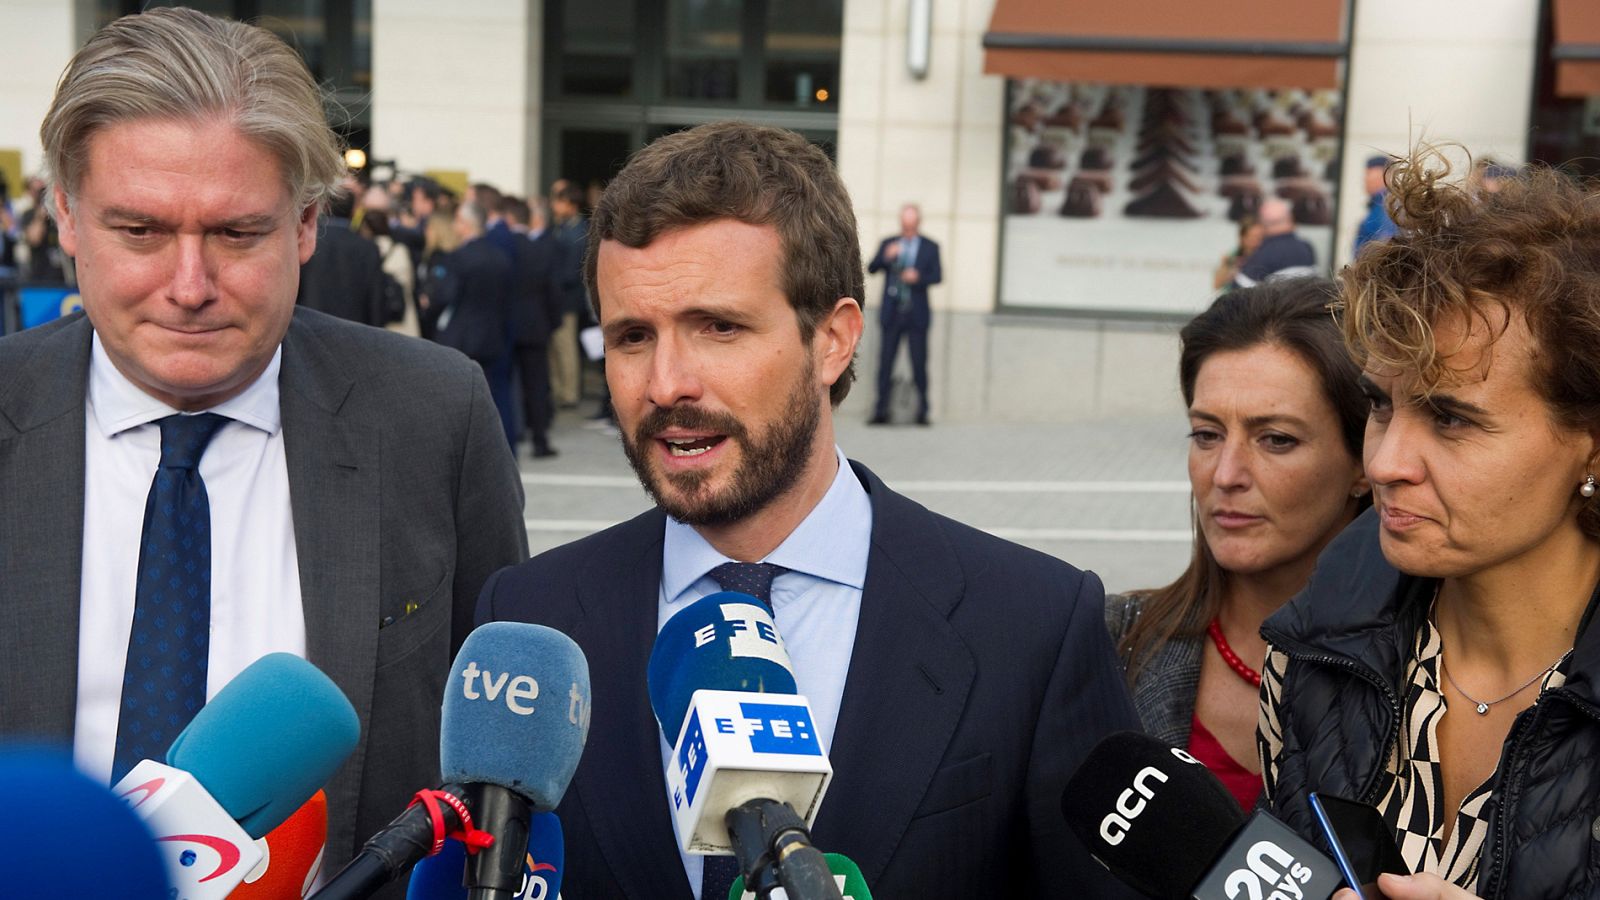 Sentencia 'procés': Casado pide una respuesta "firme" ante las declaraciones de Torra en el Parlament - RTVE.es